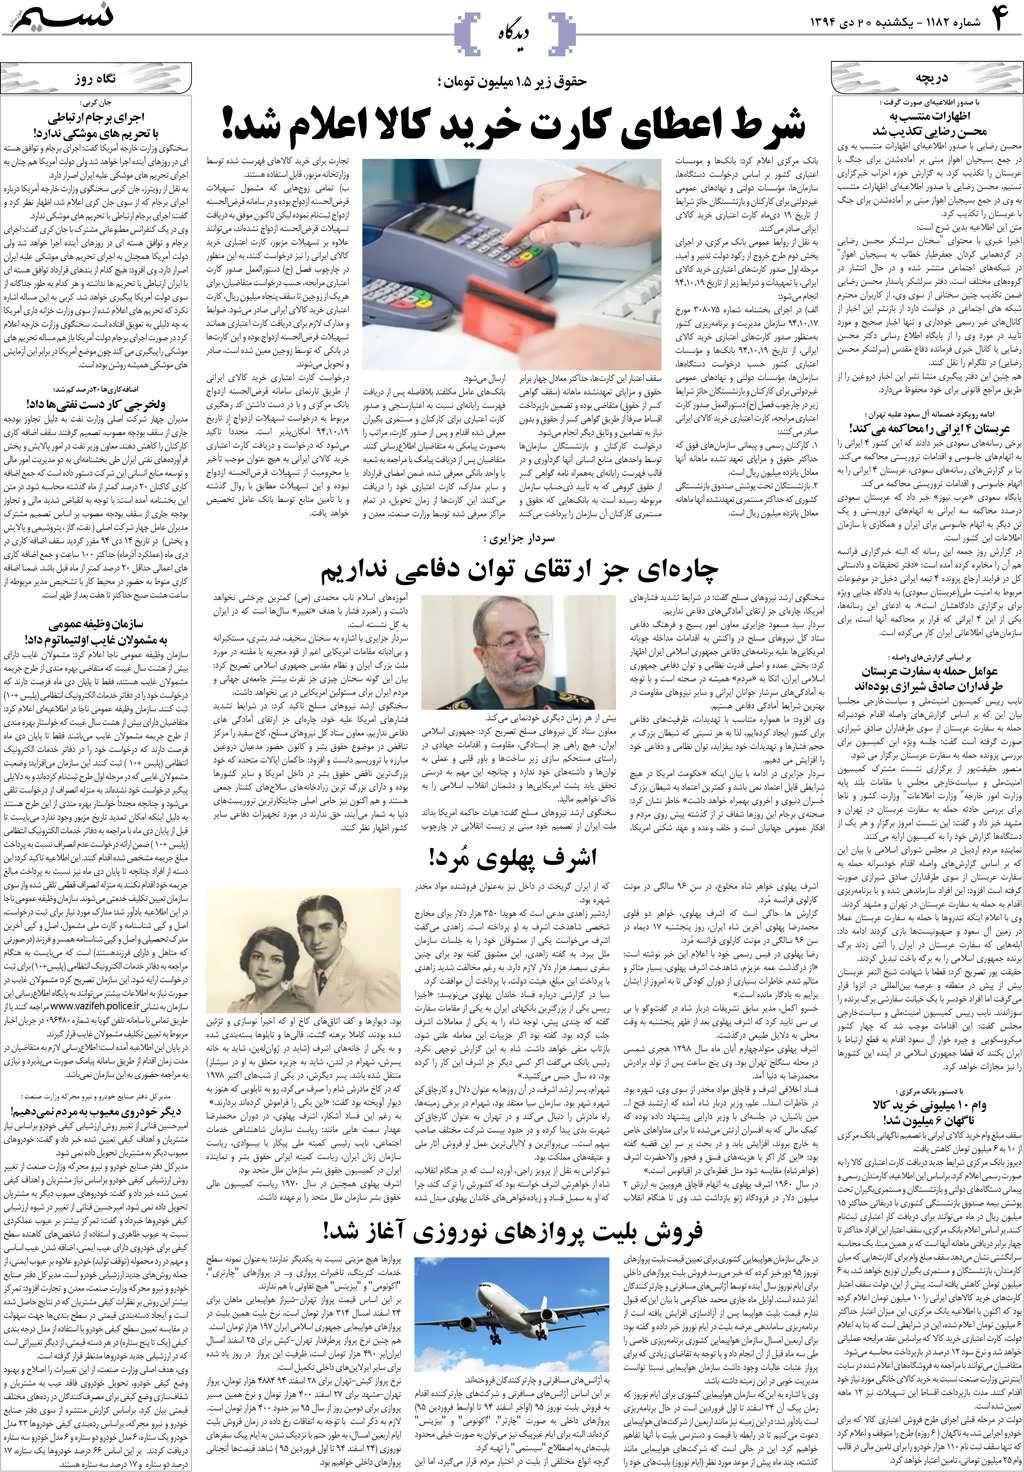 صفحه دیدگاه روزنامه نسیم شماره 1182